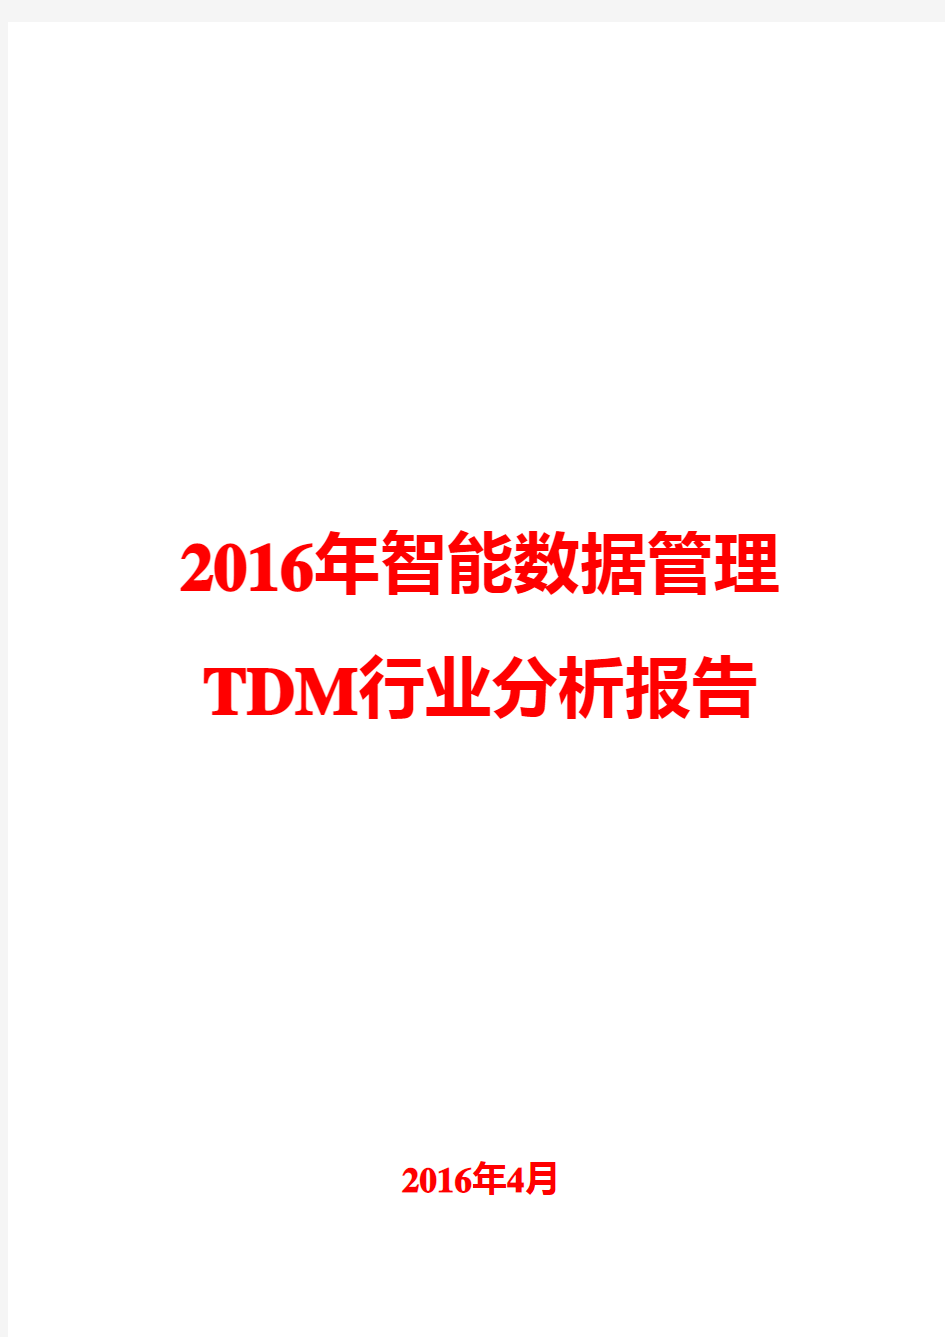 2016年智能数据管理TDM行业分析报告